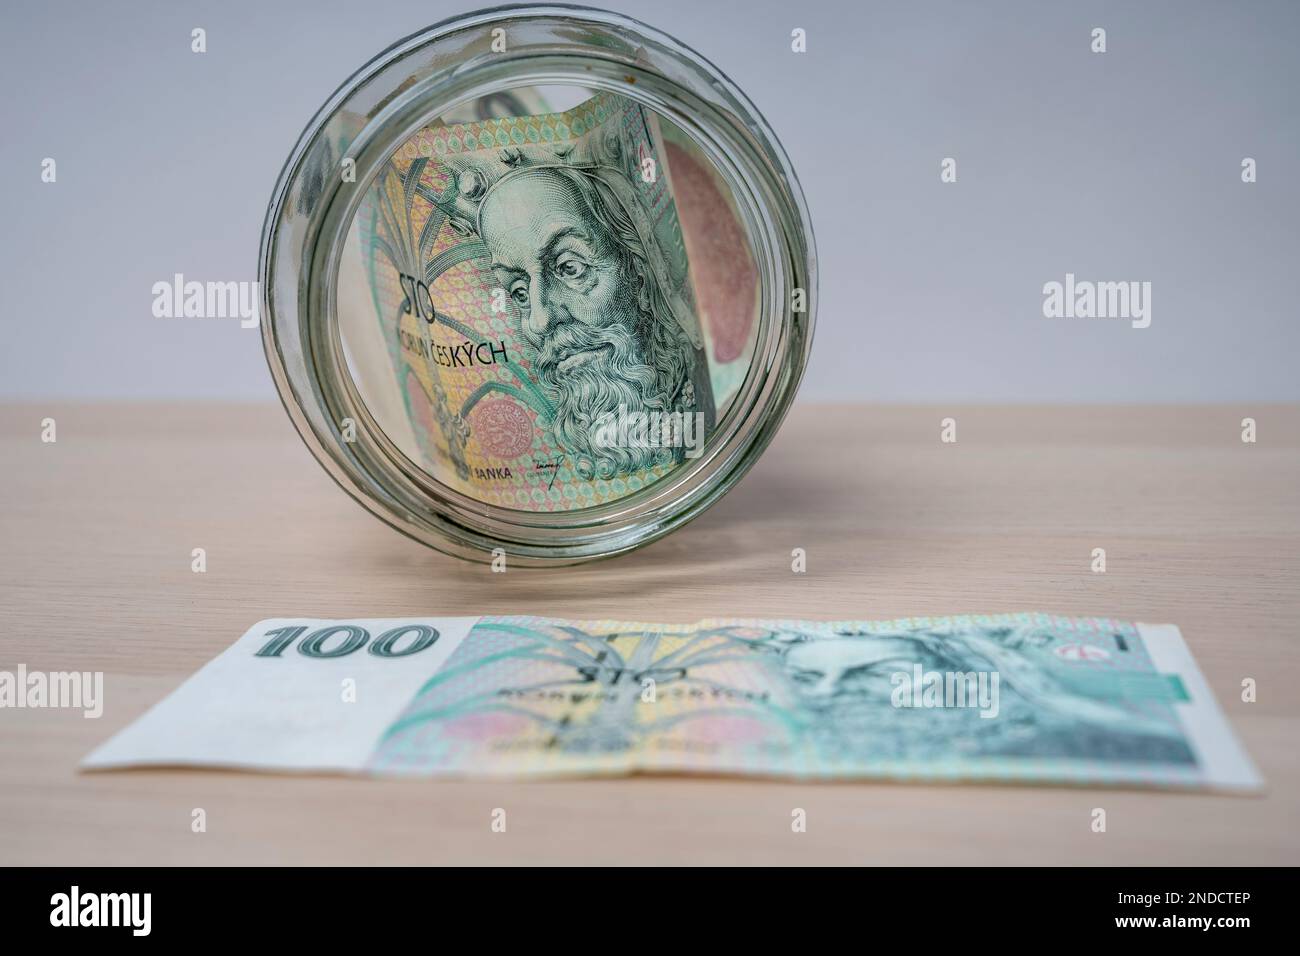 100 korun billet de banque de la République tchèque billets dans le pot de verre, économie d'argent, pot de verre sur les caisses de billets de banque. Banque D'Images